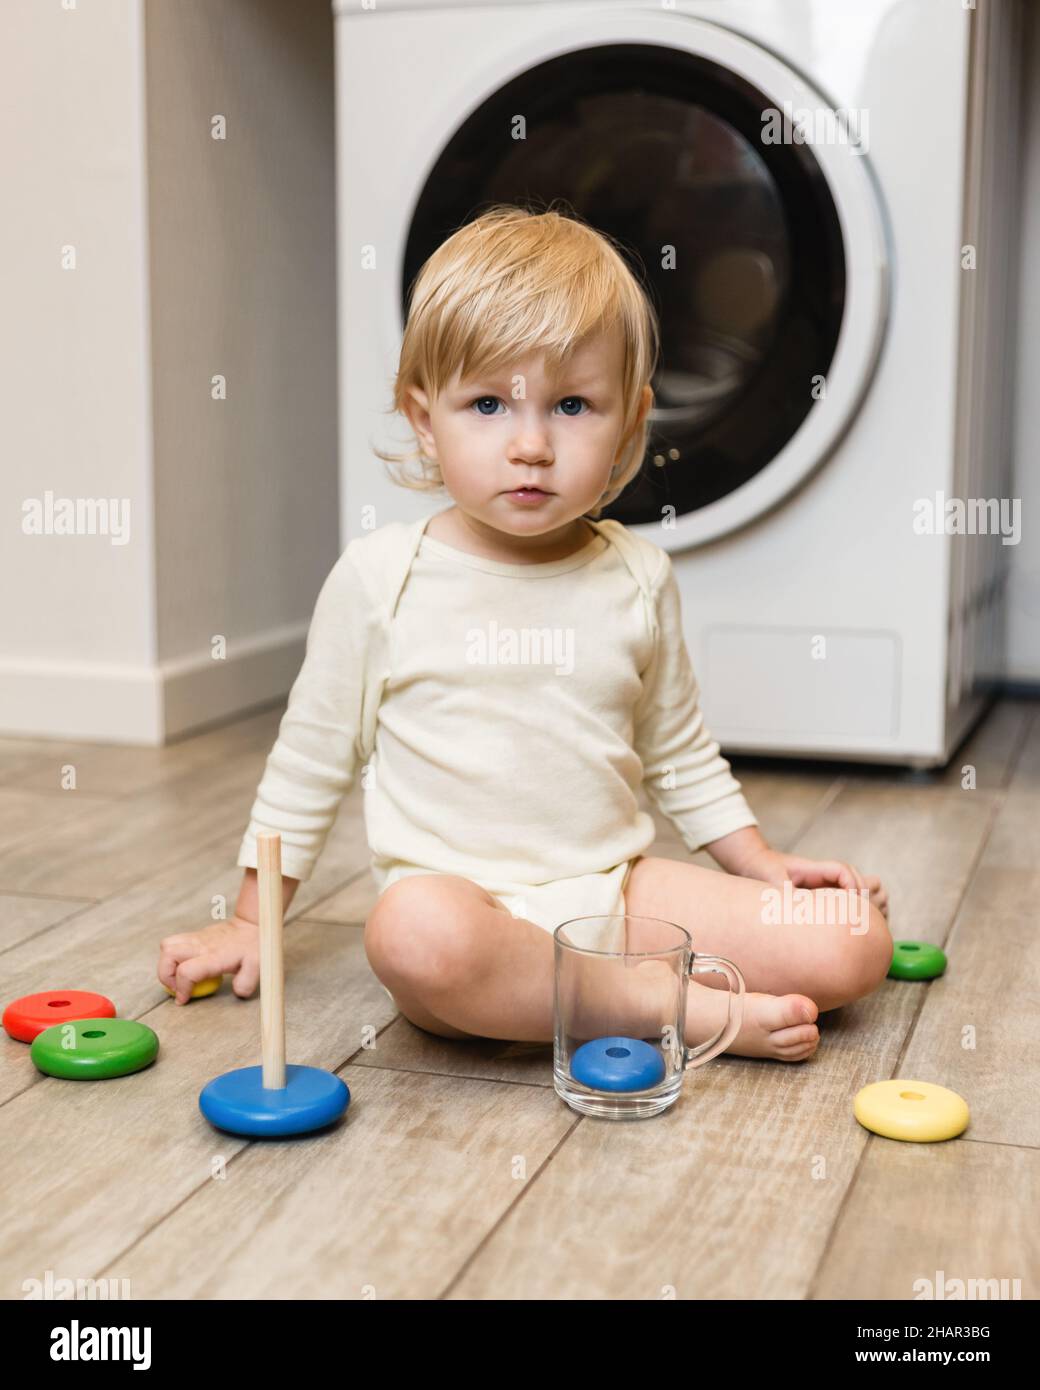  Lavadora de juguetes para niños, juego de lavadora y secadora  para niños pequeños, juguetes de aparatos de juego de juegos de rol,  lavadora y secadora para niños, lavadora para niños con